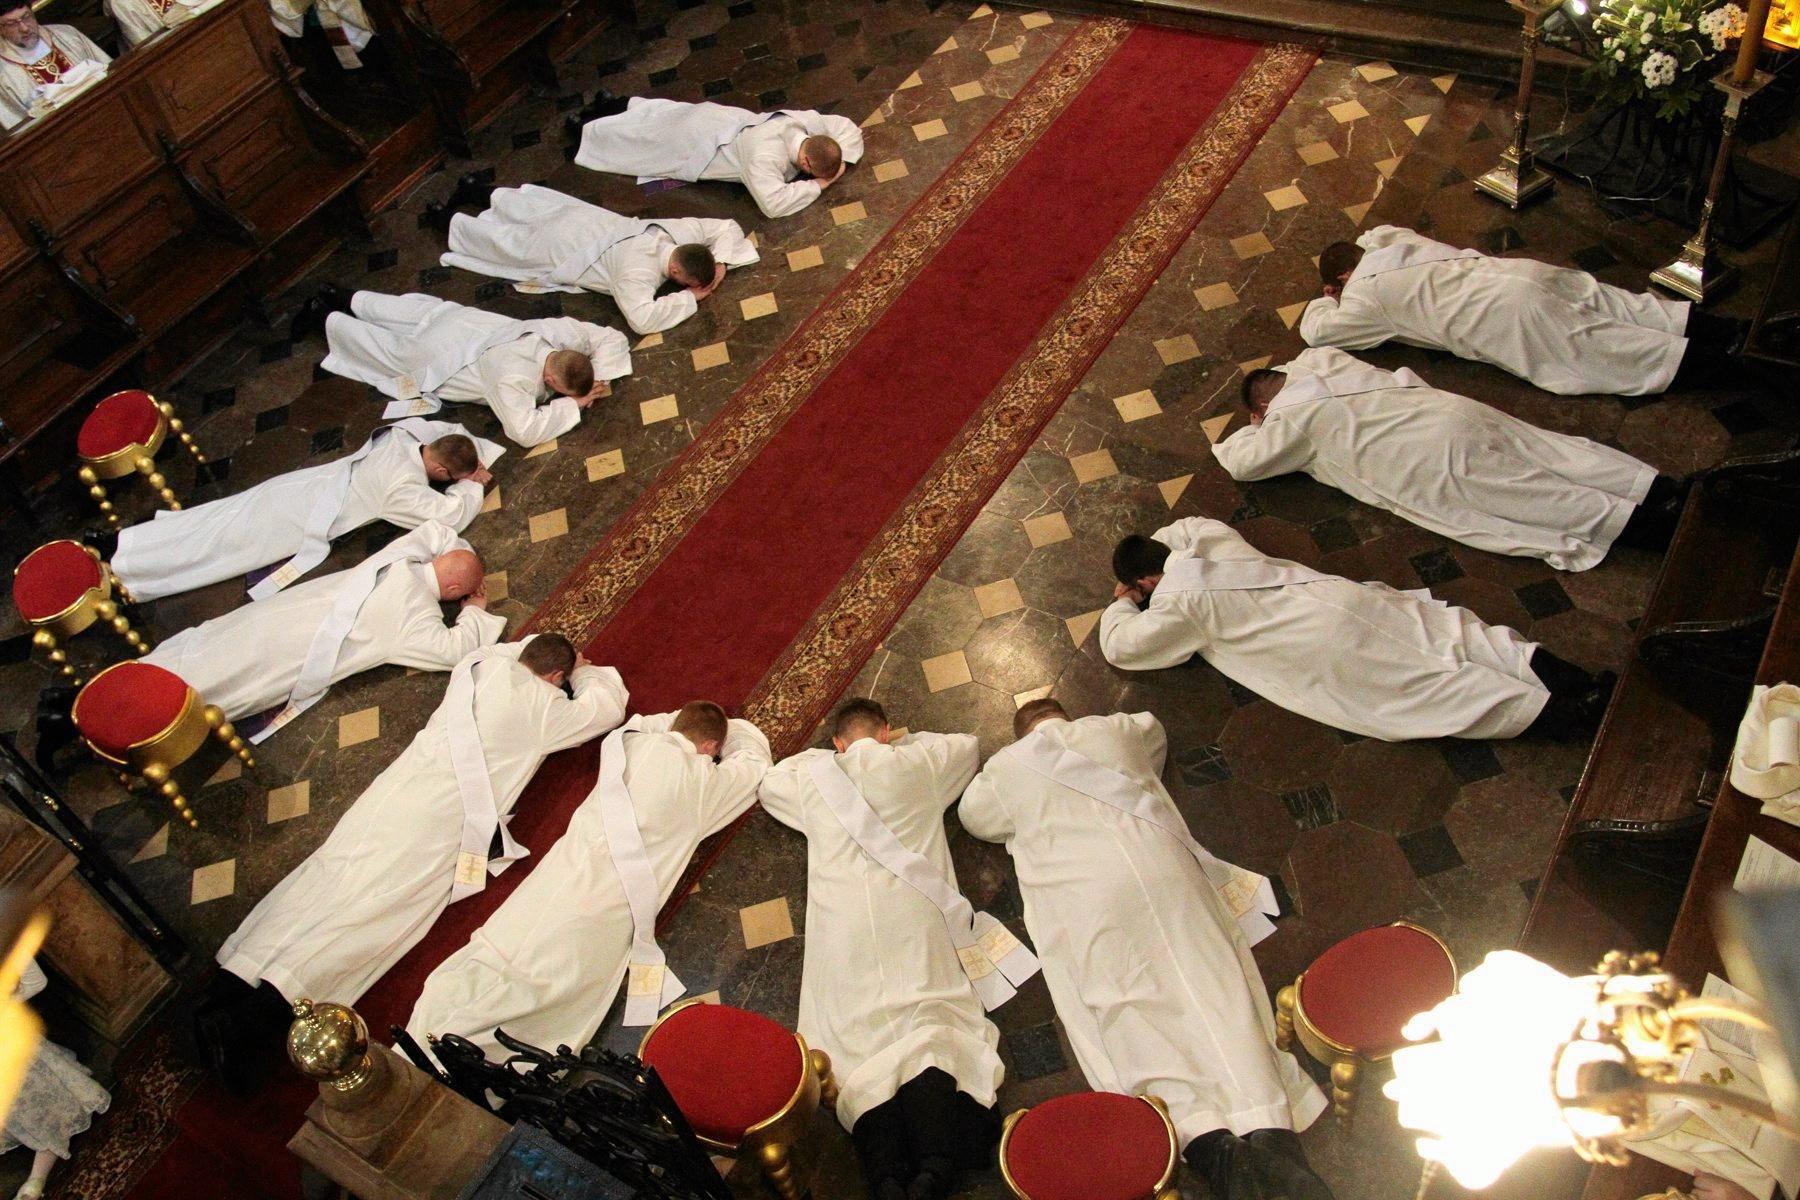 klerycy w albach leżący na posadzce kościoła układający się w kształt litery U